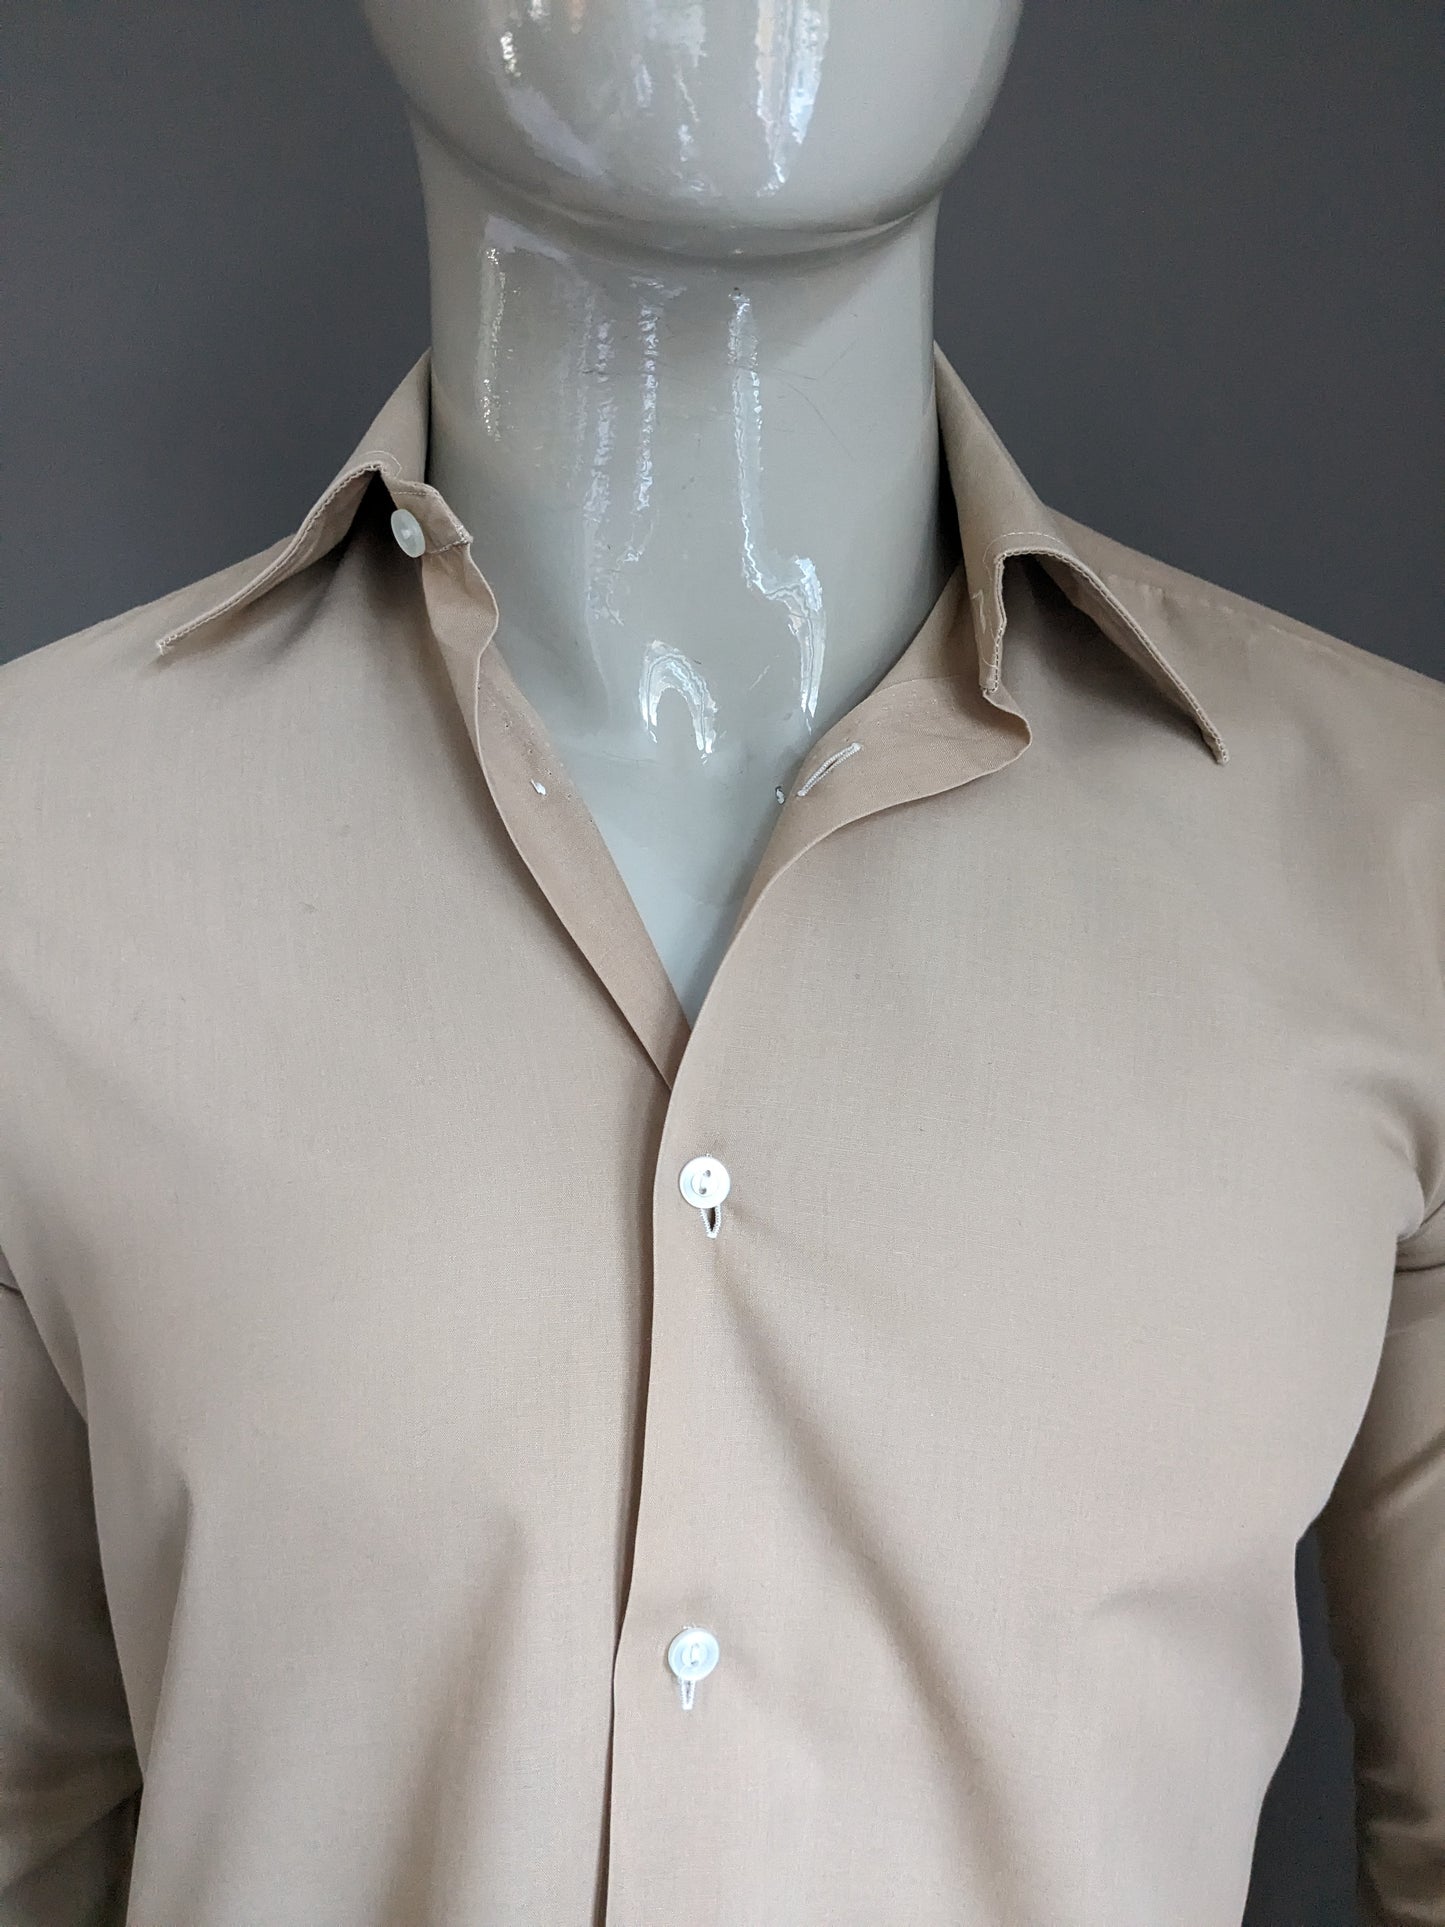 Camisa Vintage Tootal 70 con cuello de punto. Color marrón claro. Talla M.